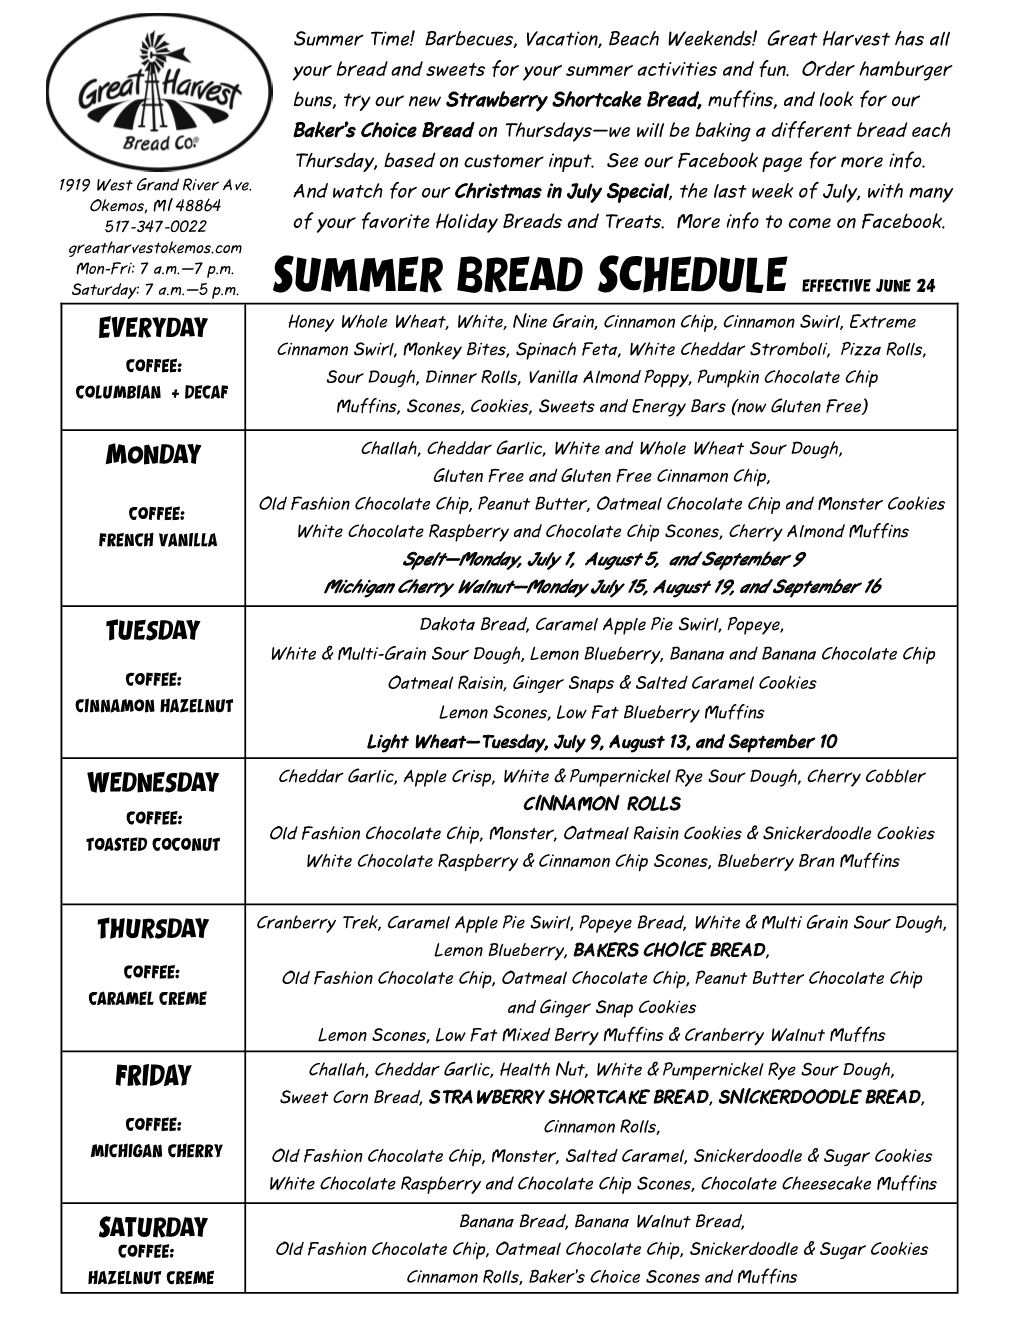 Summer Bread Schedule Effective June 24